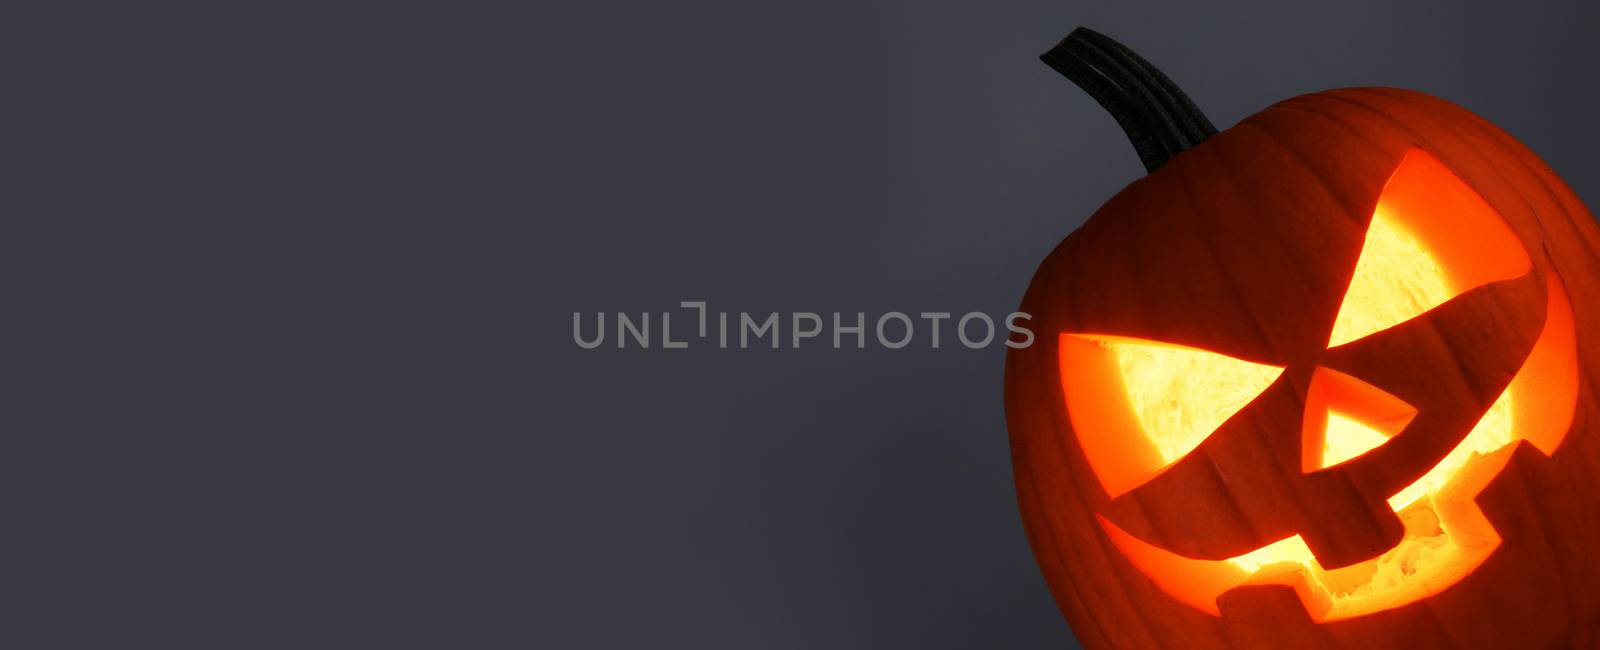 Glowing Halloween Pumpkin by Yellowj